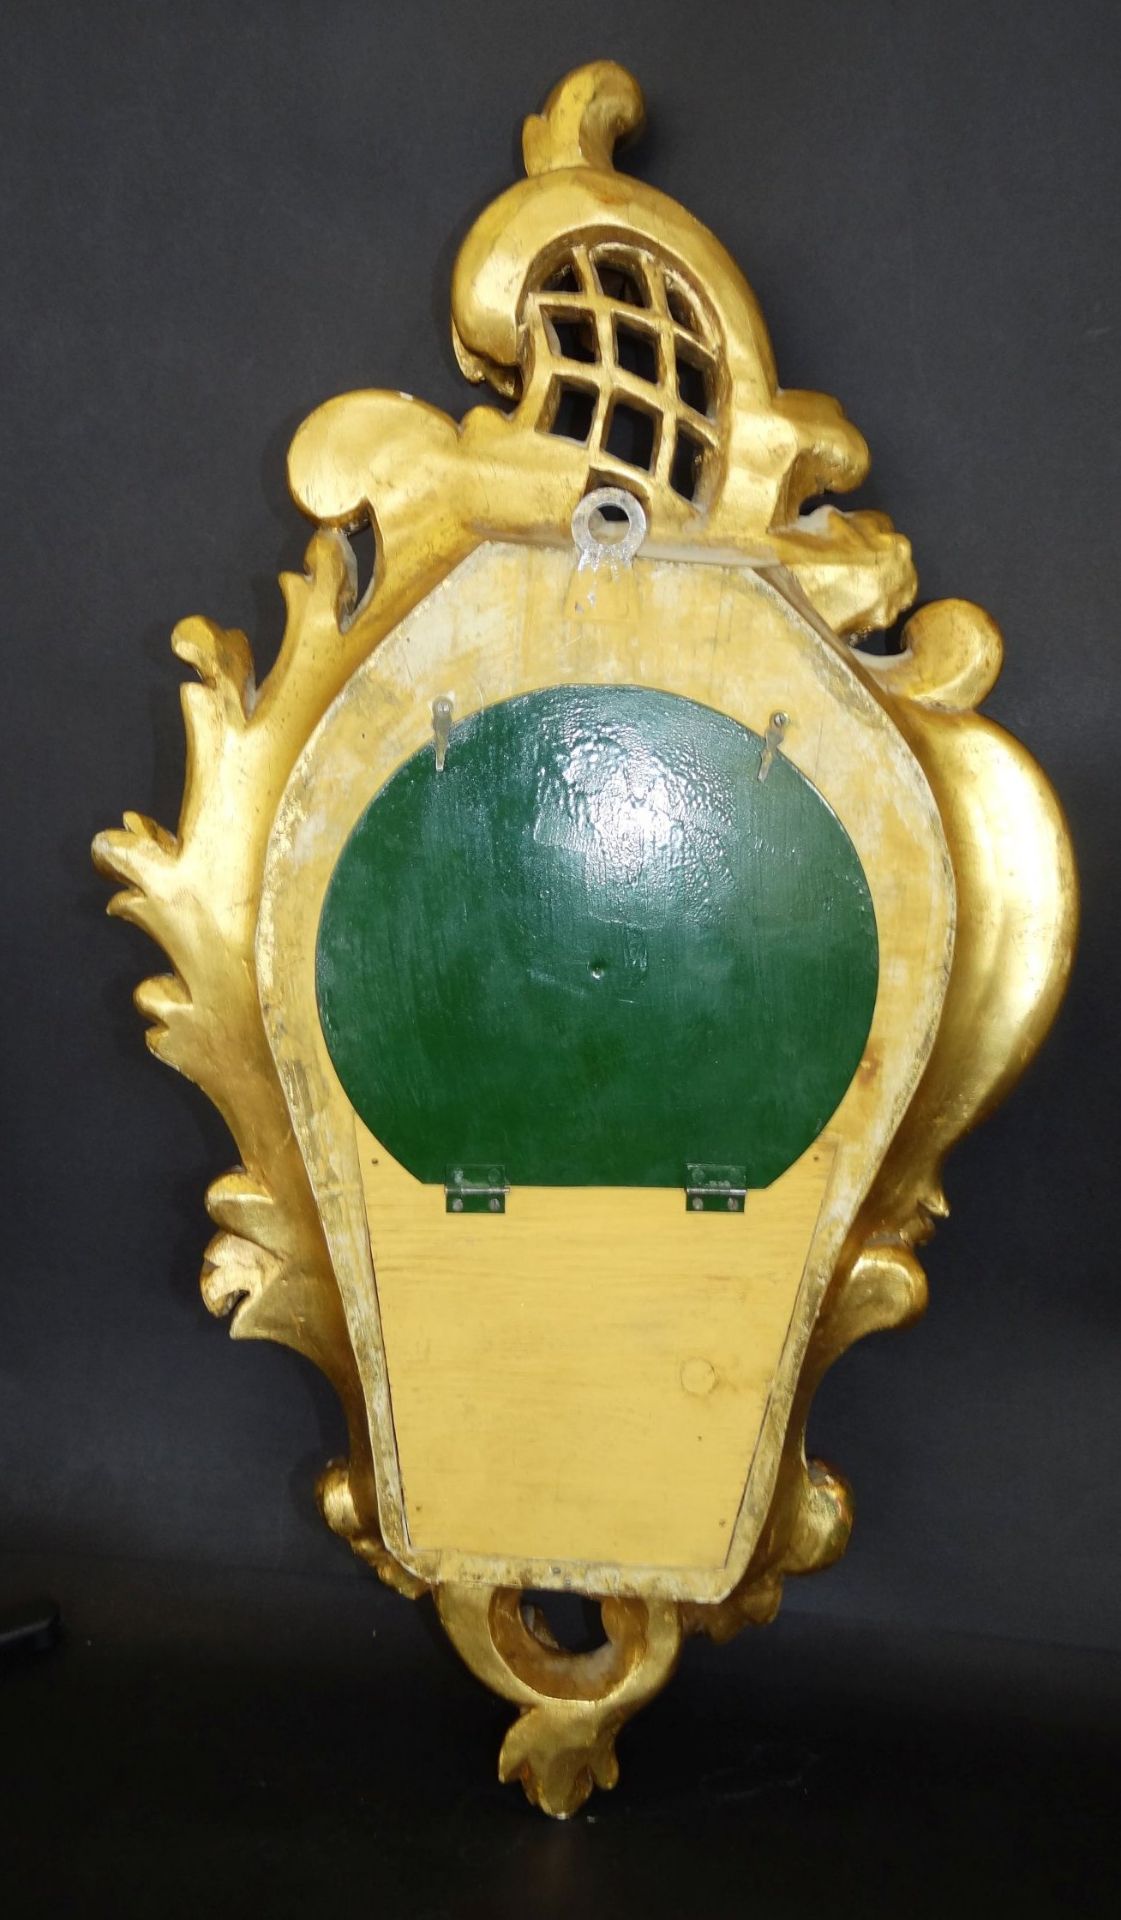 gr. Kartell-Uhr, Holz vergoldet, , H-62 cm, B-32 cm, guter Zustand, leider falsches , zu langes - Bild 10 aus 10